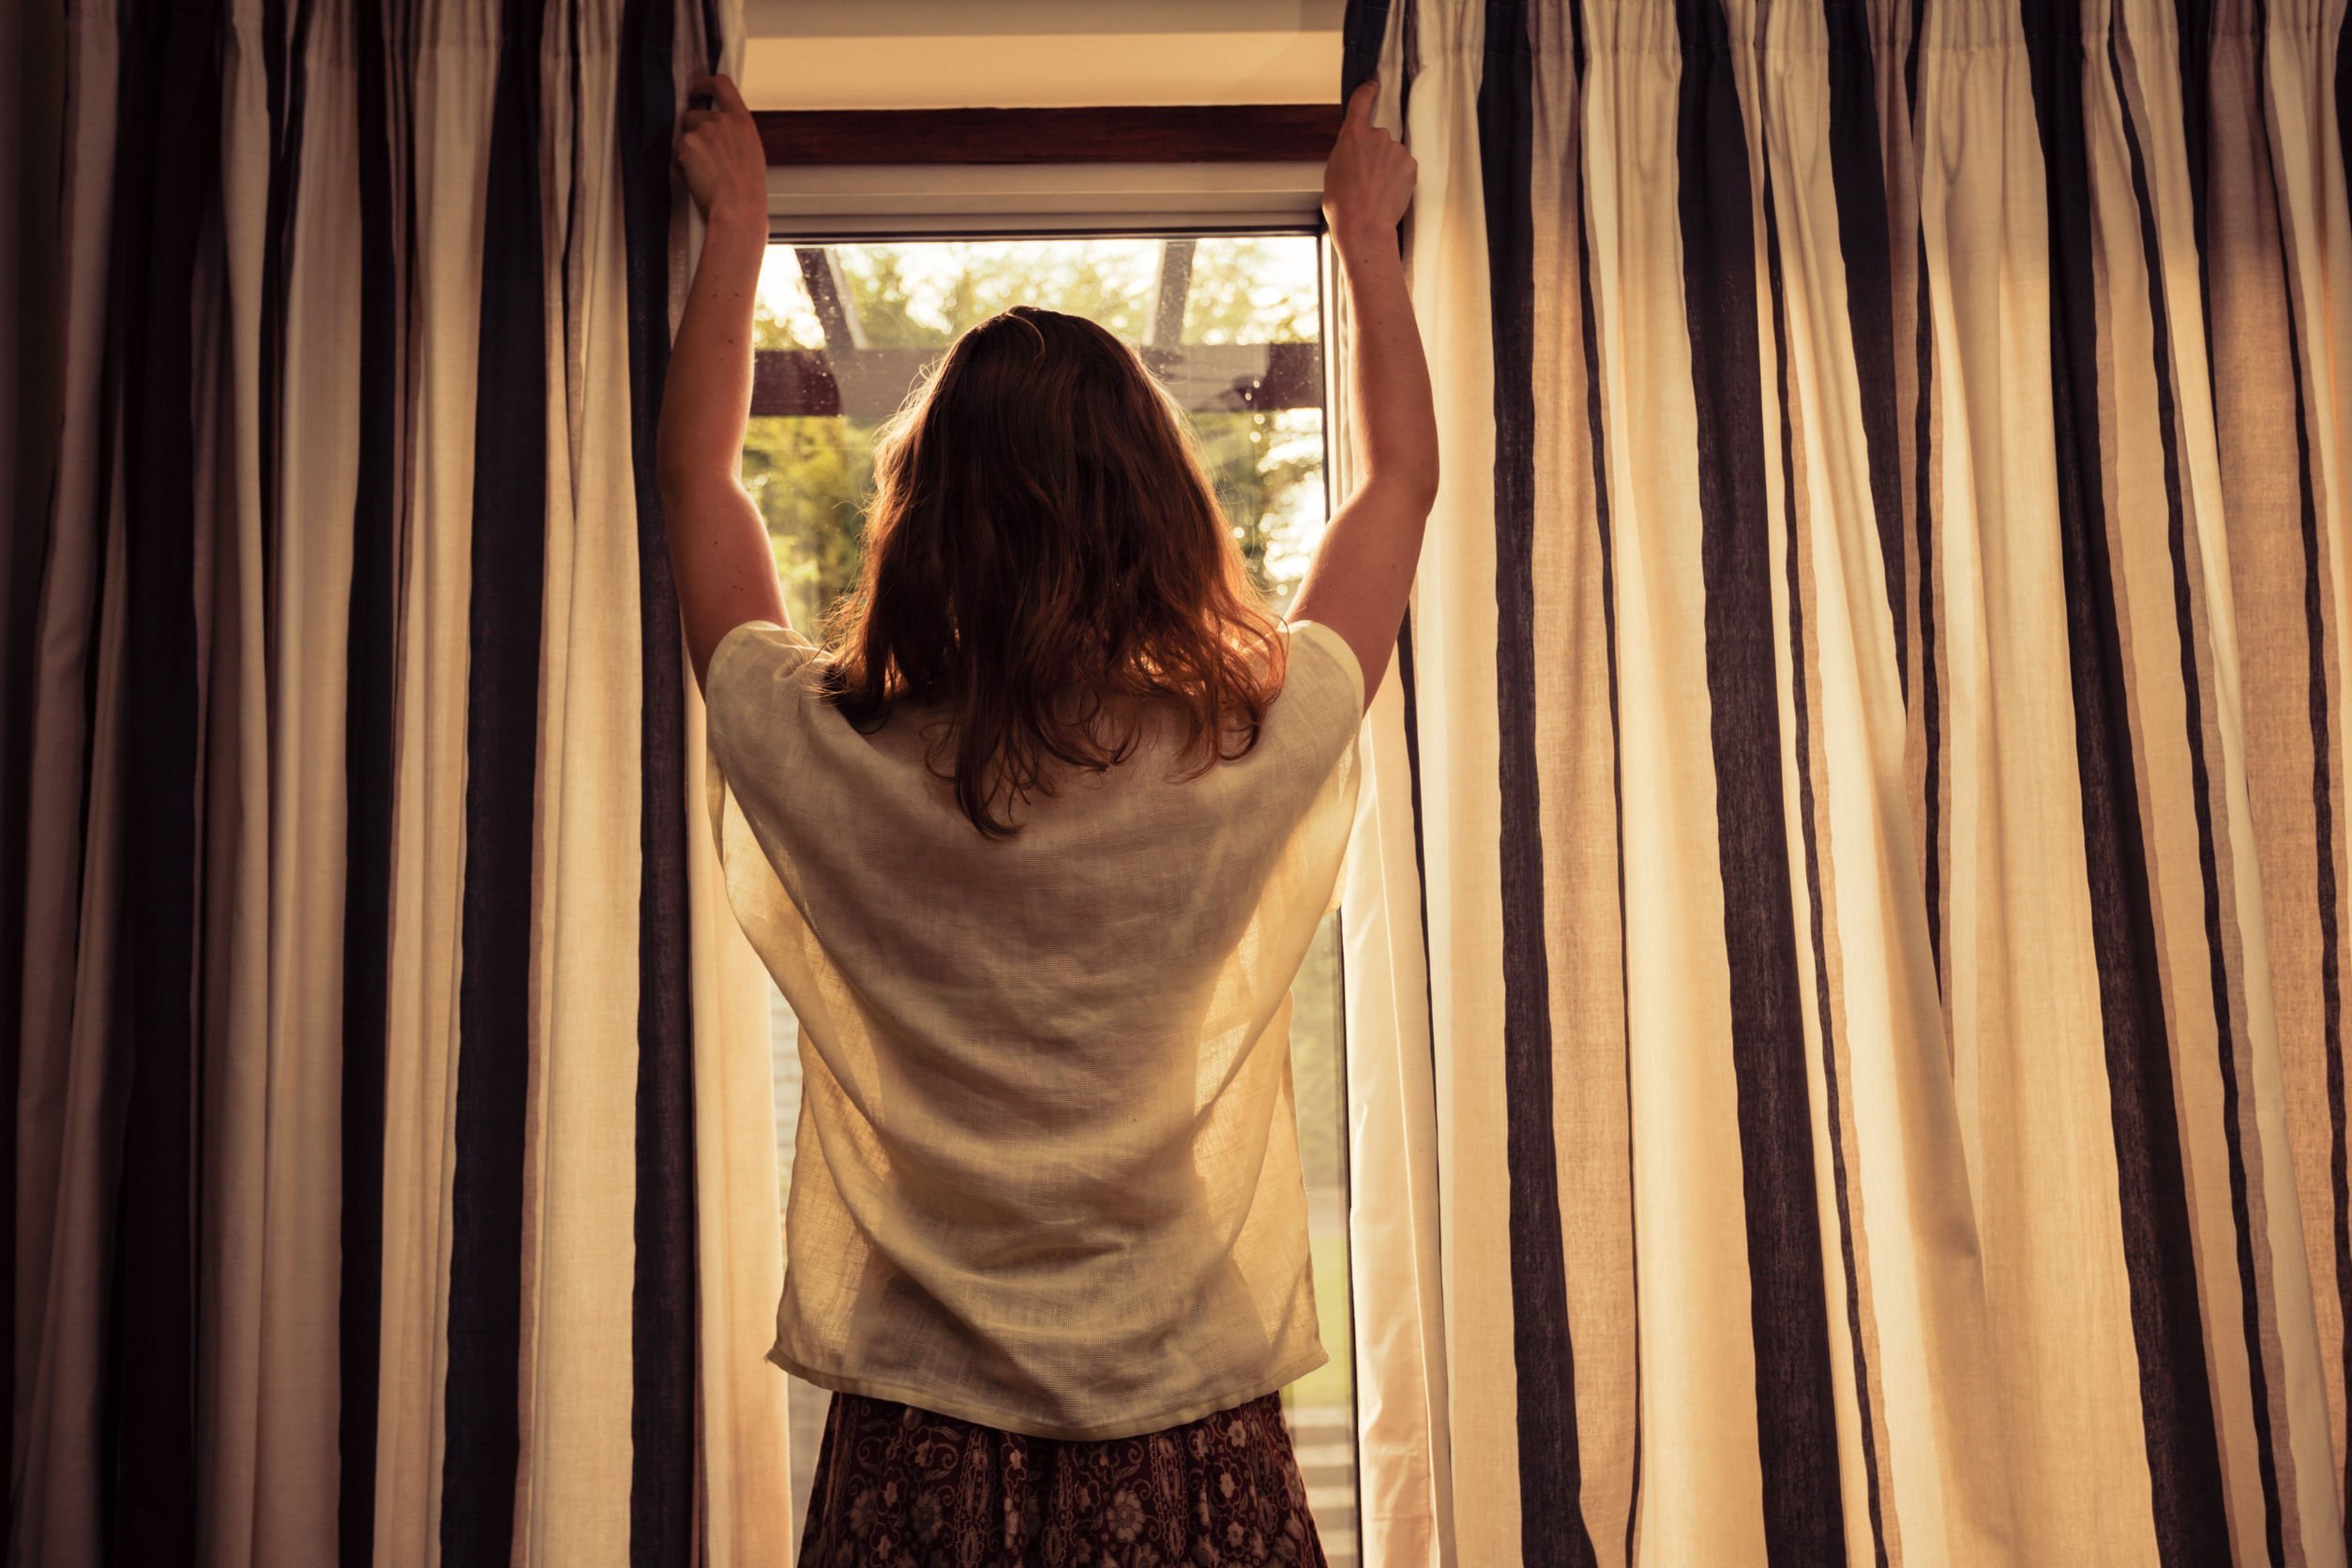 Открытие шторки. Девушка и шторы. Женщина открывает шторы. Окно с закрытыми шторами. Фотосессия со шторами.